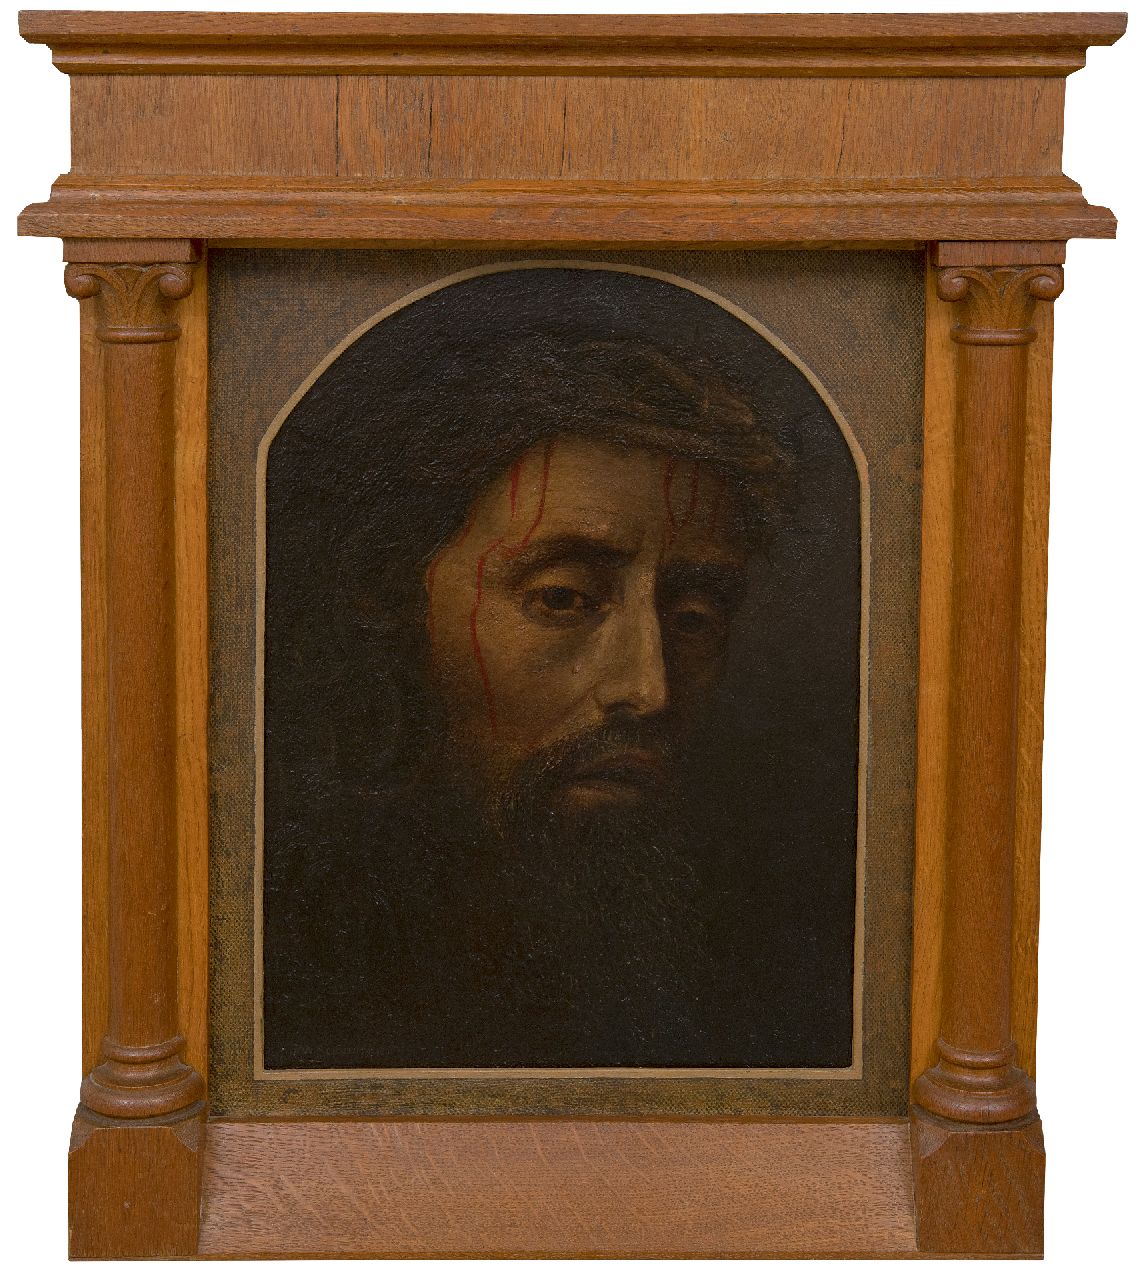 Schouten J.H.  | 'Jan' Hadris Schouten | Schilderijen te koop aangeboden | Hoofd van Lijdende Christus met Doornenkroon, olieverf op board op paneel 45,5 x 33,1 cm